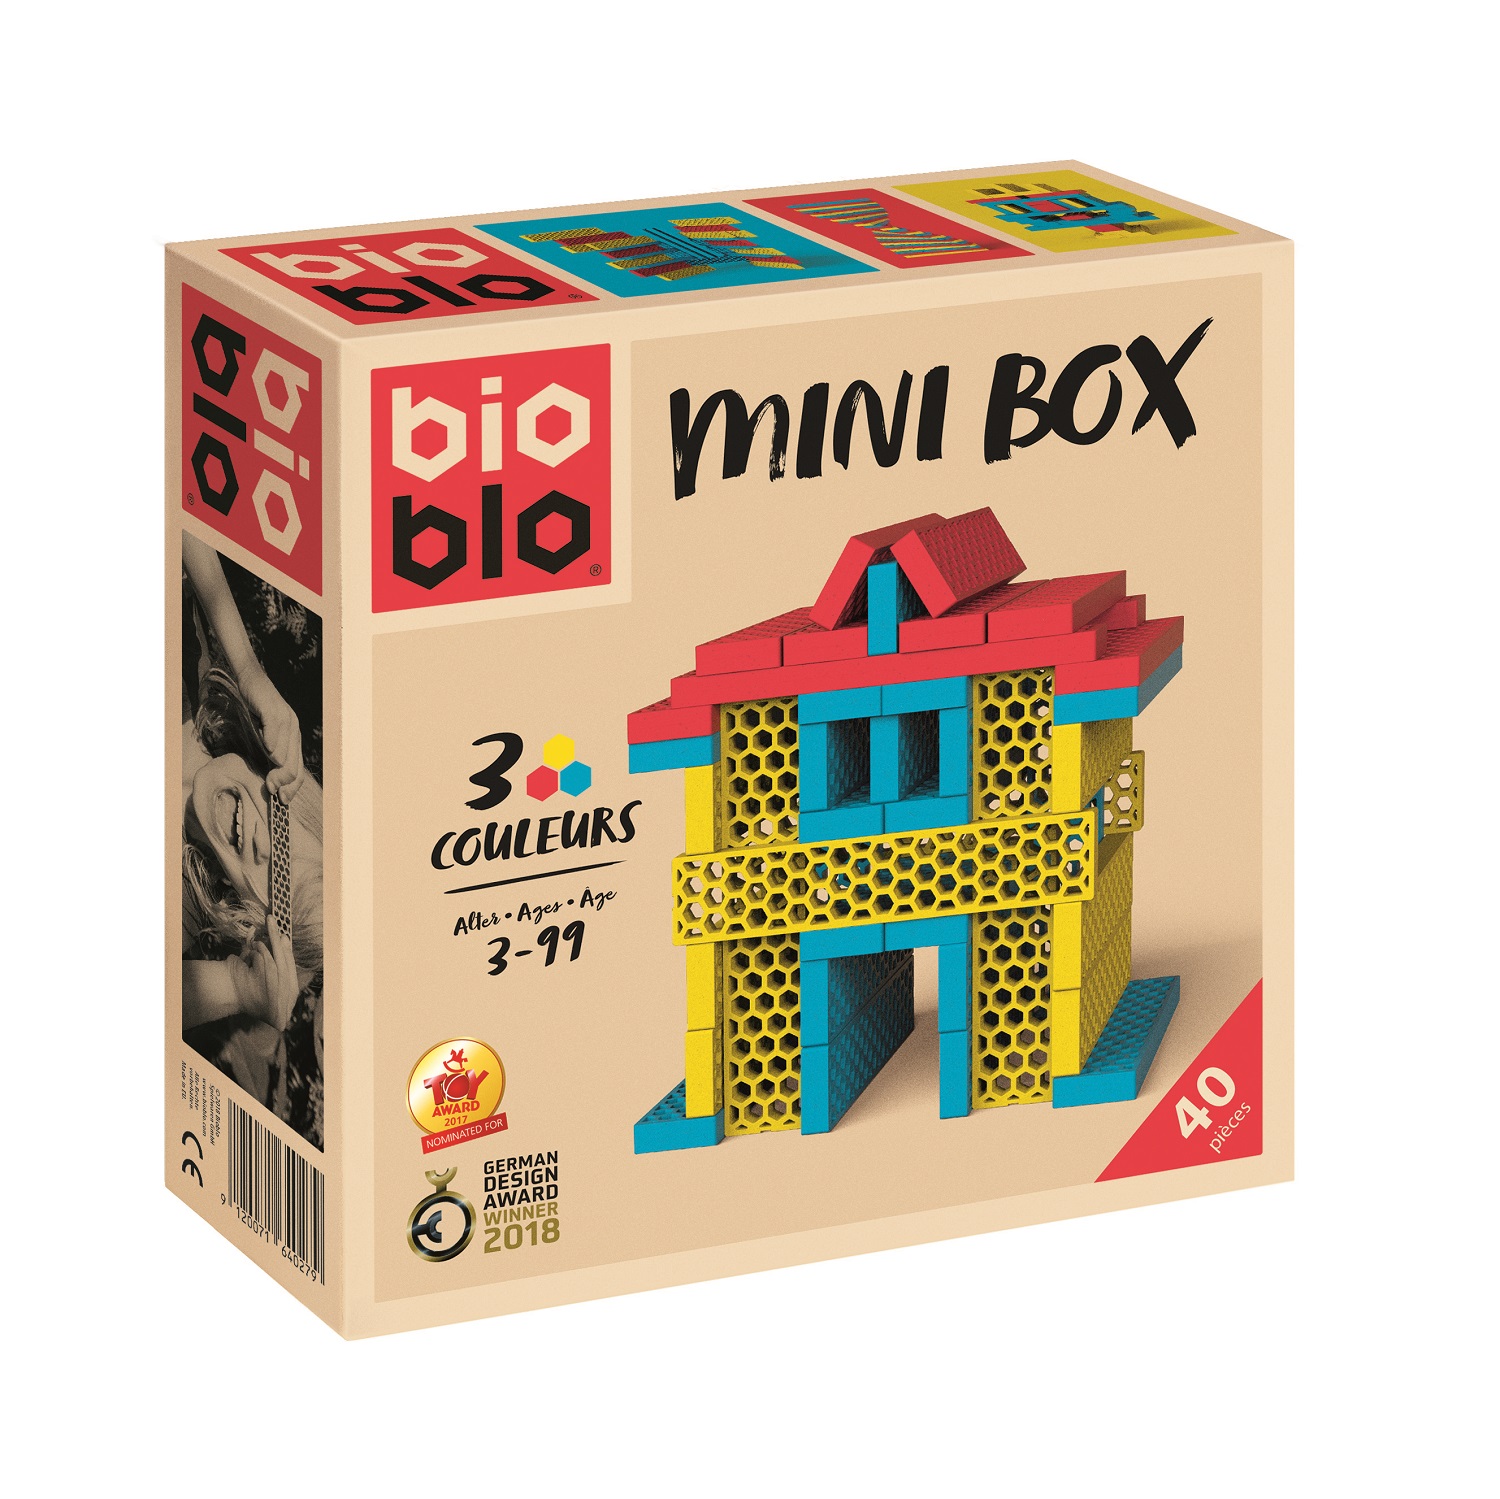 Bioblo mini box 40 briques